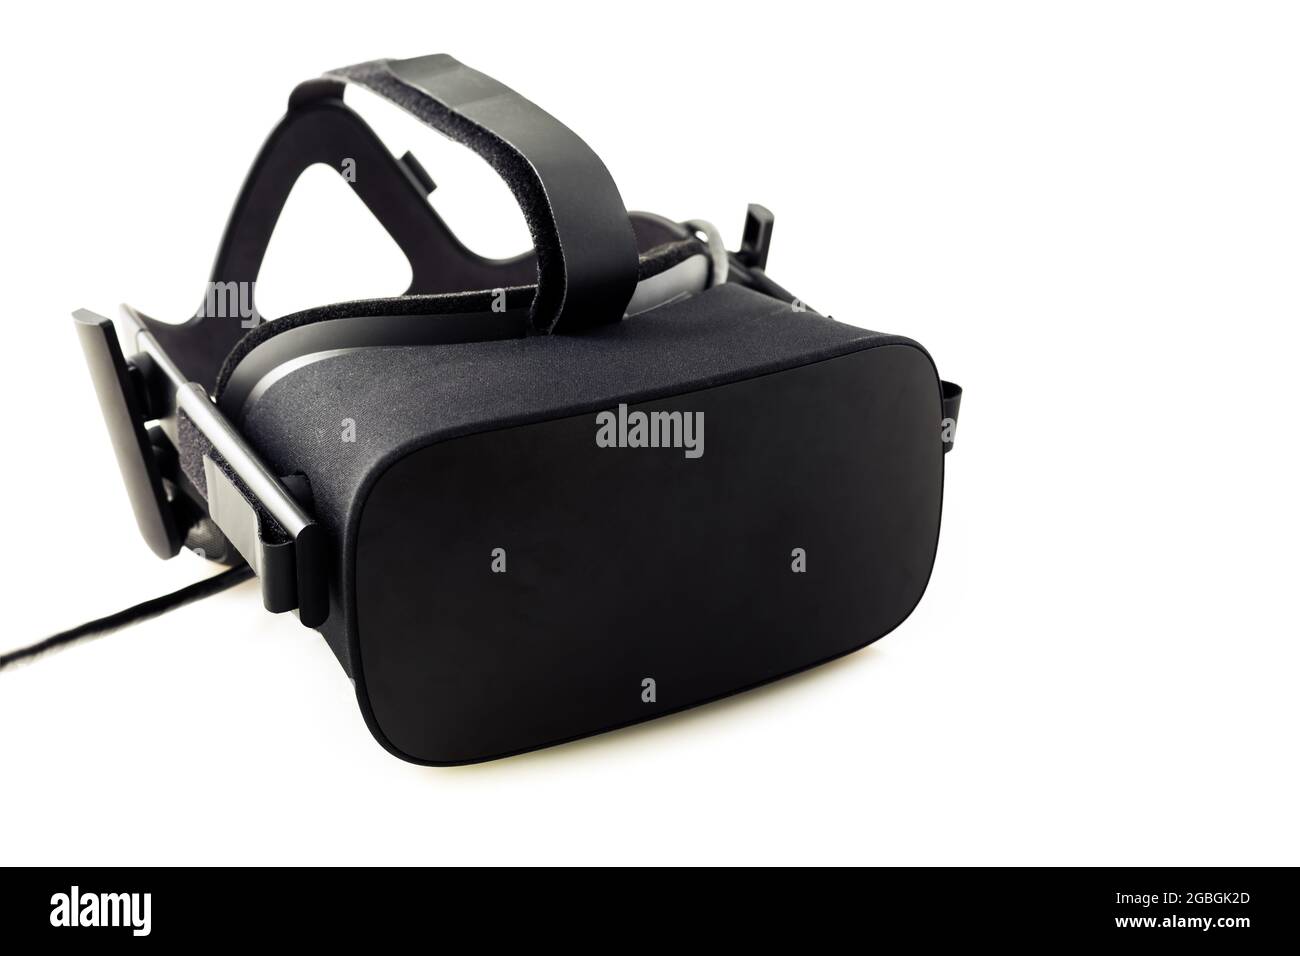 Casque VR - lunettes de réalité virtuelle pour la simulation de la réalité pour différents multimédia, isolées sur fond blanc Banque D'Images